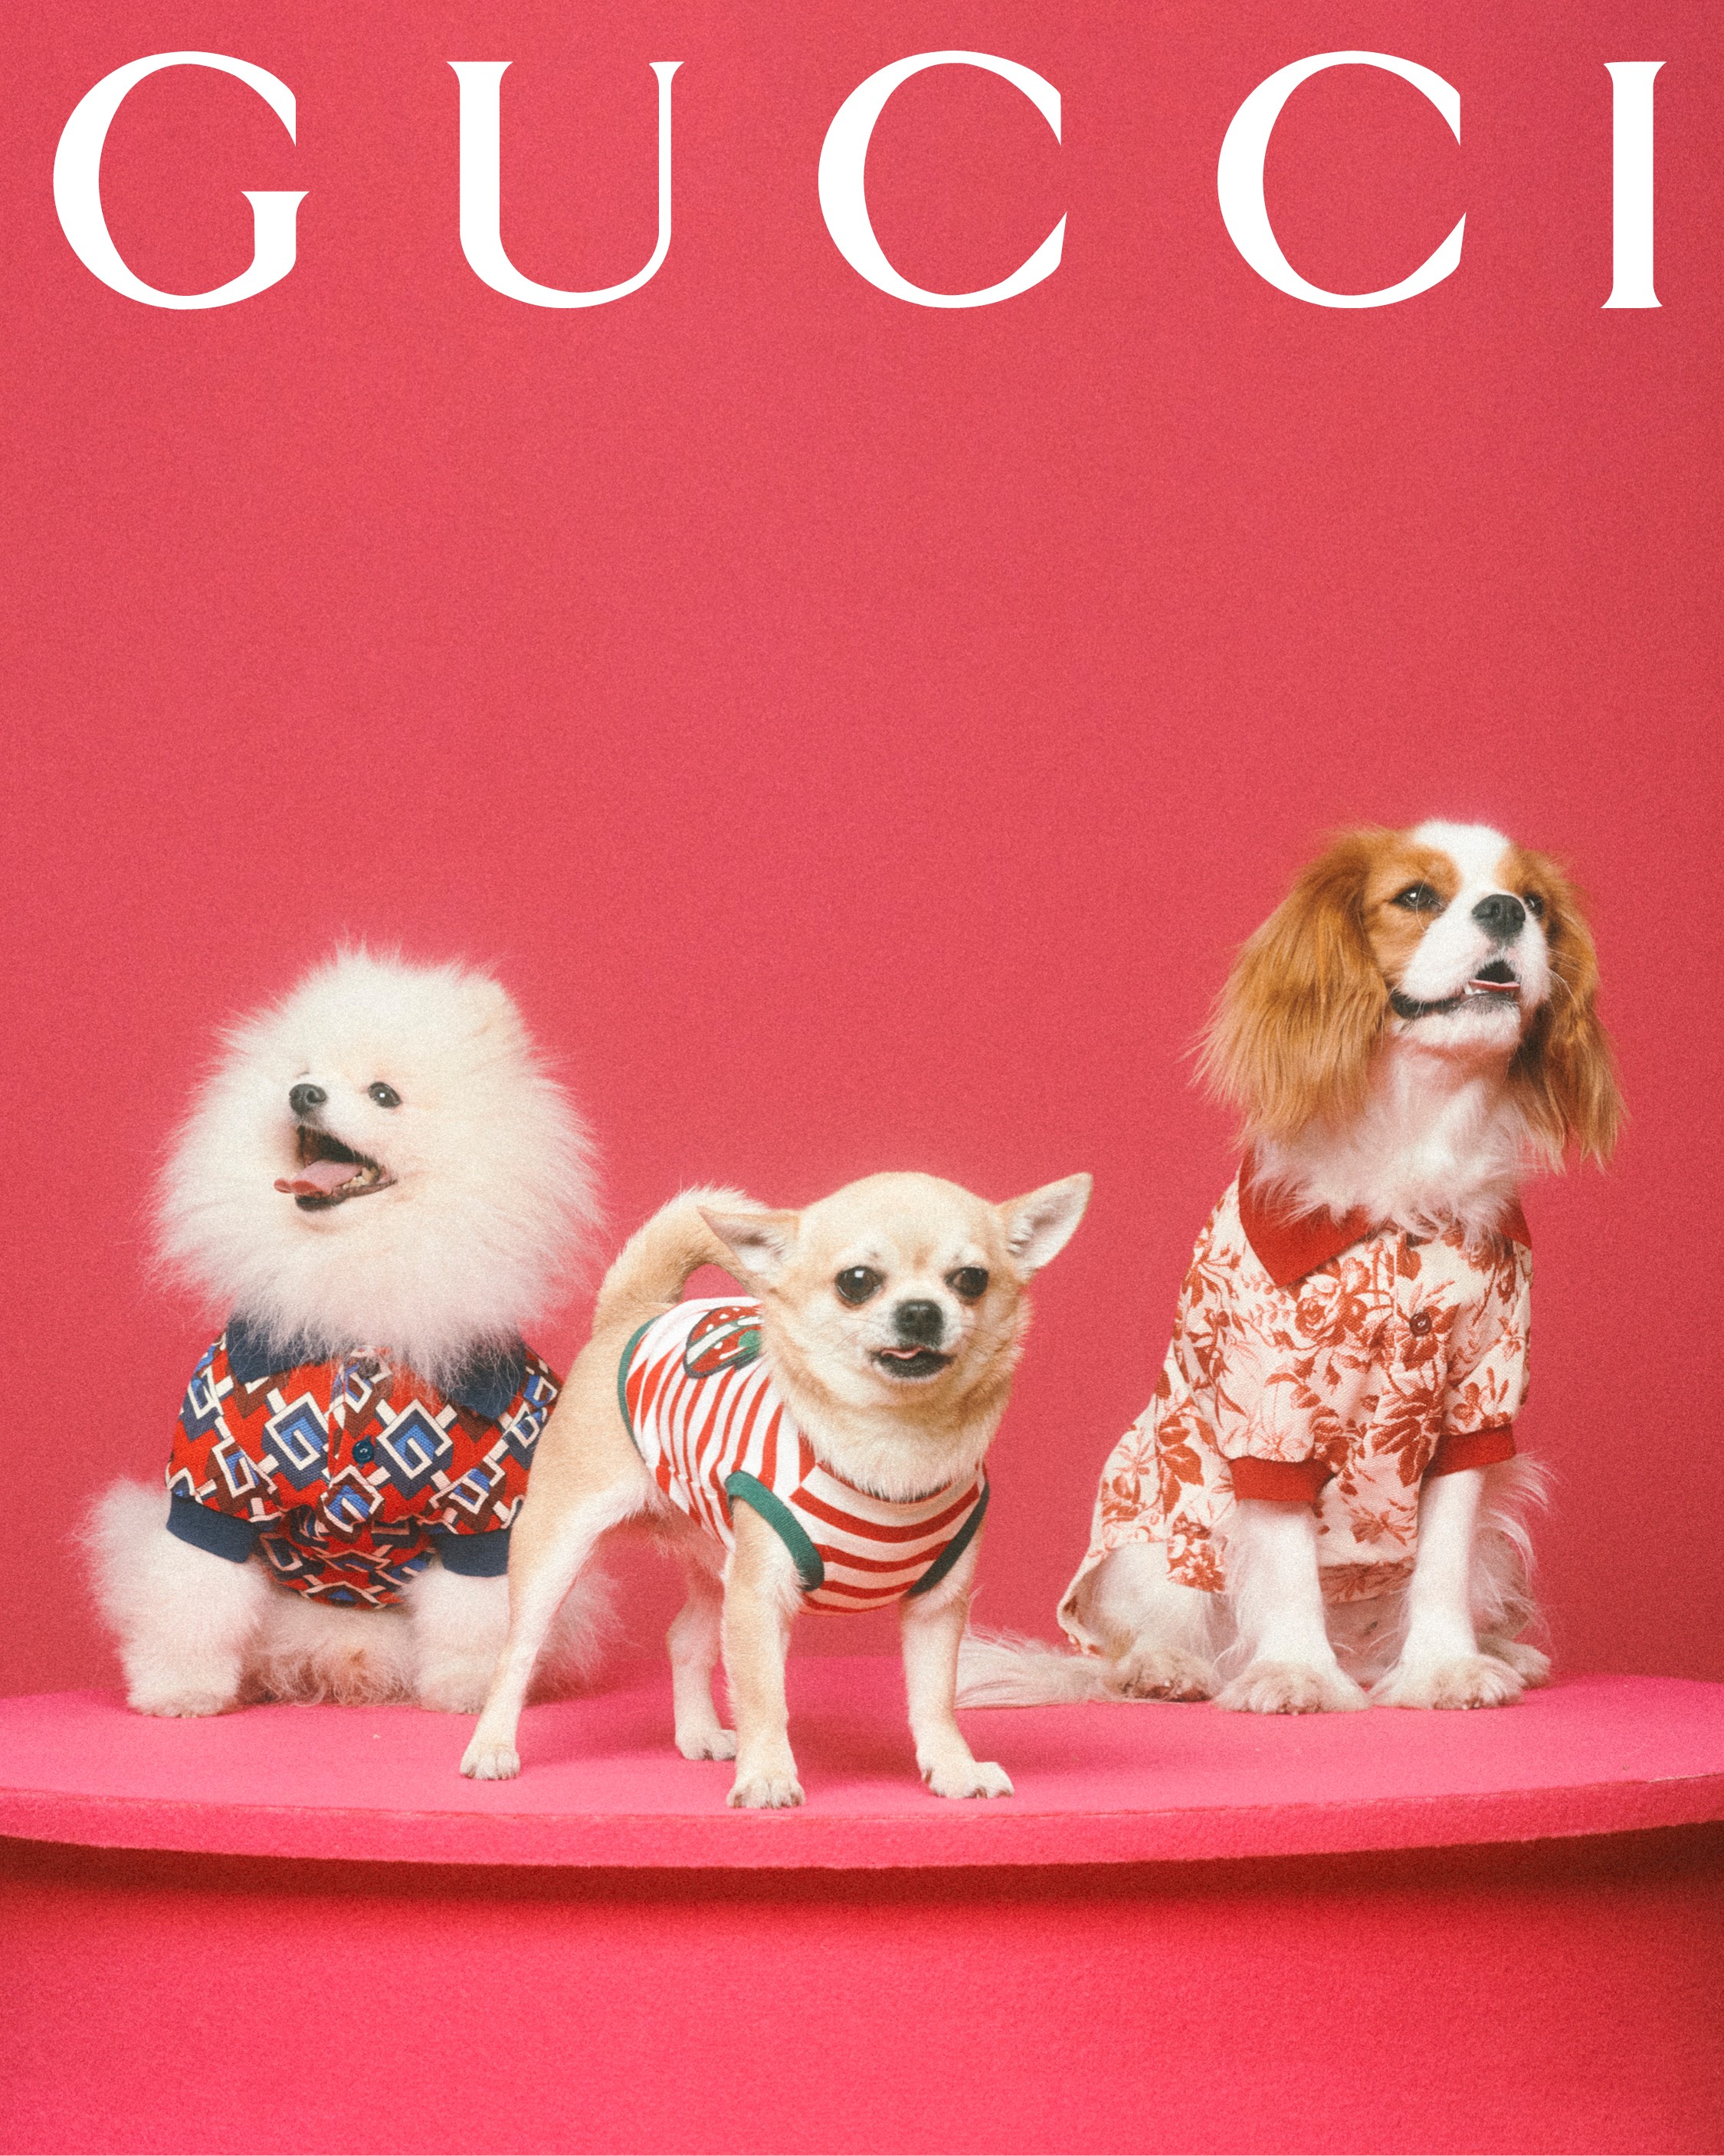 Gucci lança linha de acessórios para cães e gatos (Foto: Divulgação)